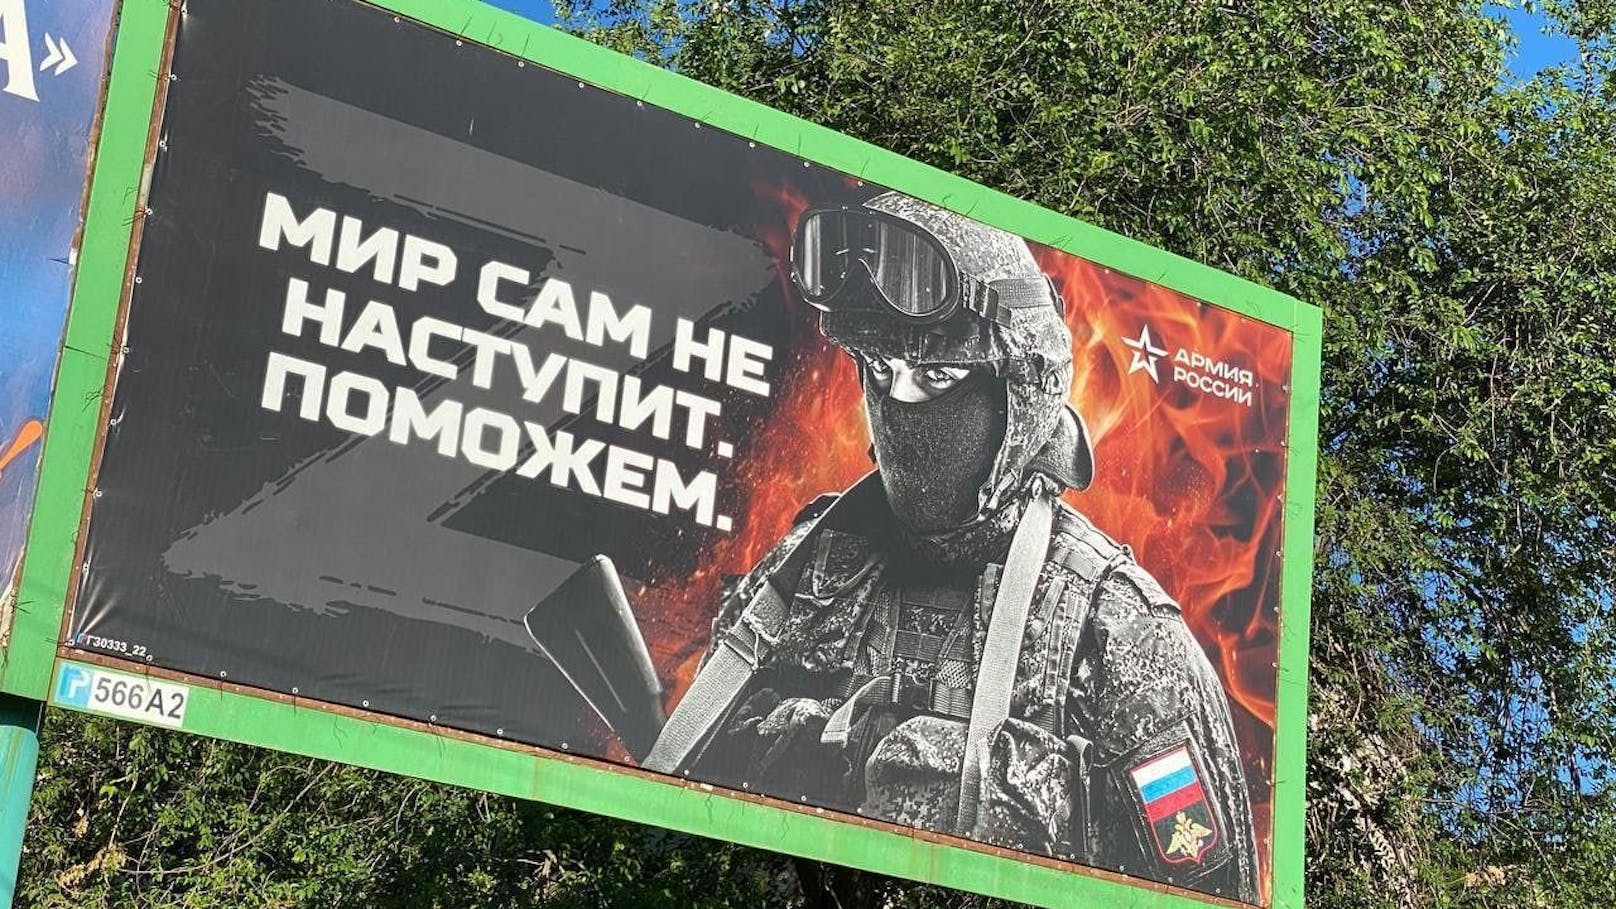 Russische Propaganda-Plakate in Luhansk: "Friede kommt nicht von alleine. Wir helfen dabei nach."